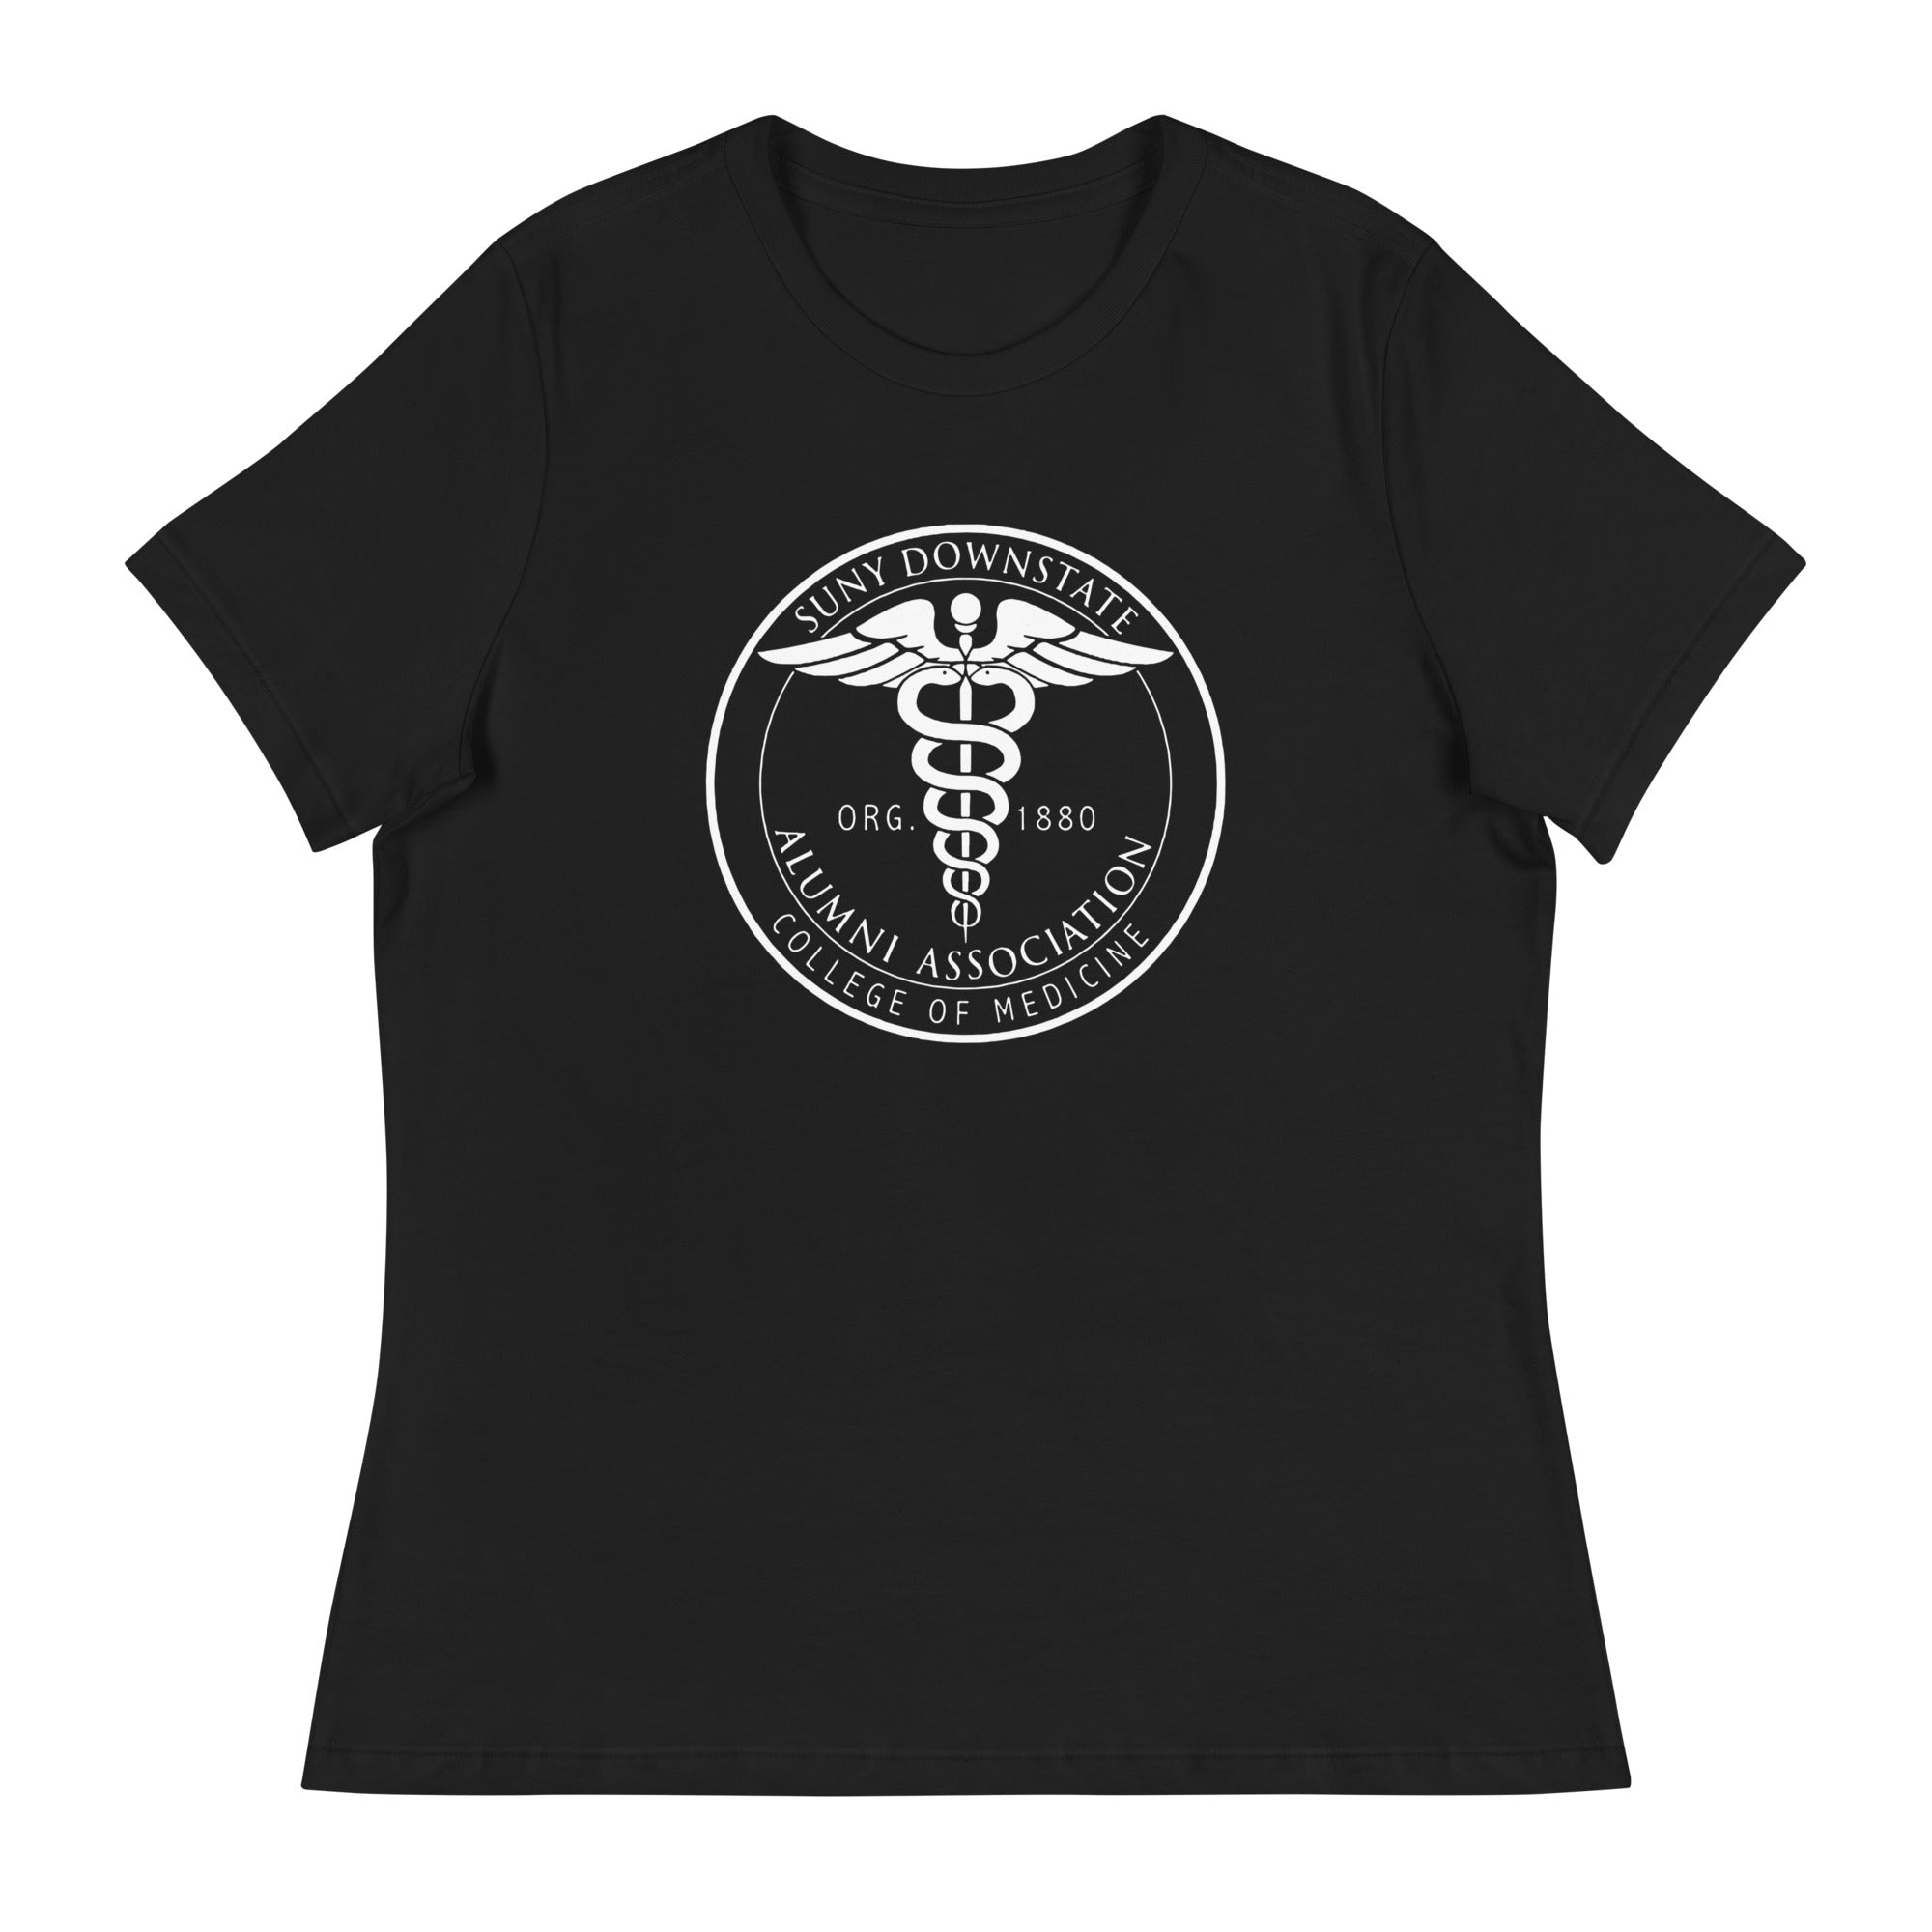 AACMSD Women's Relaxed T-Shirt